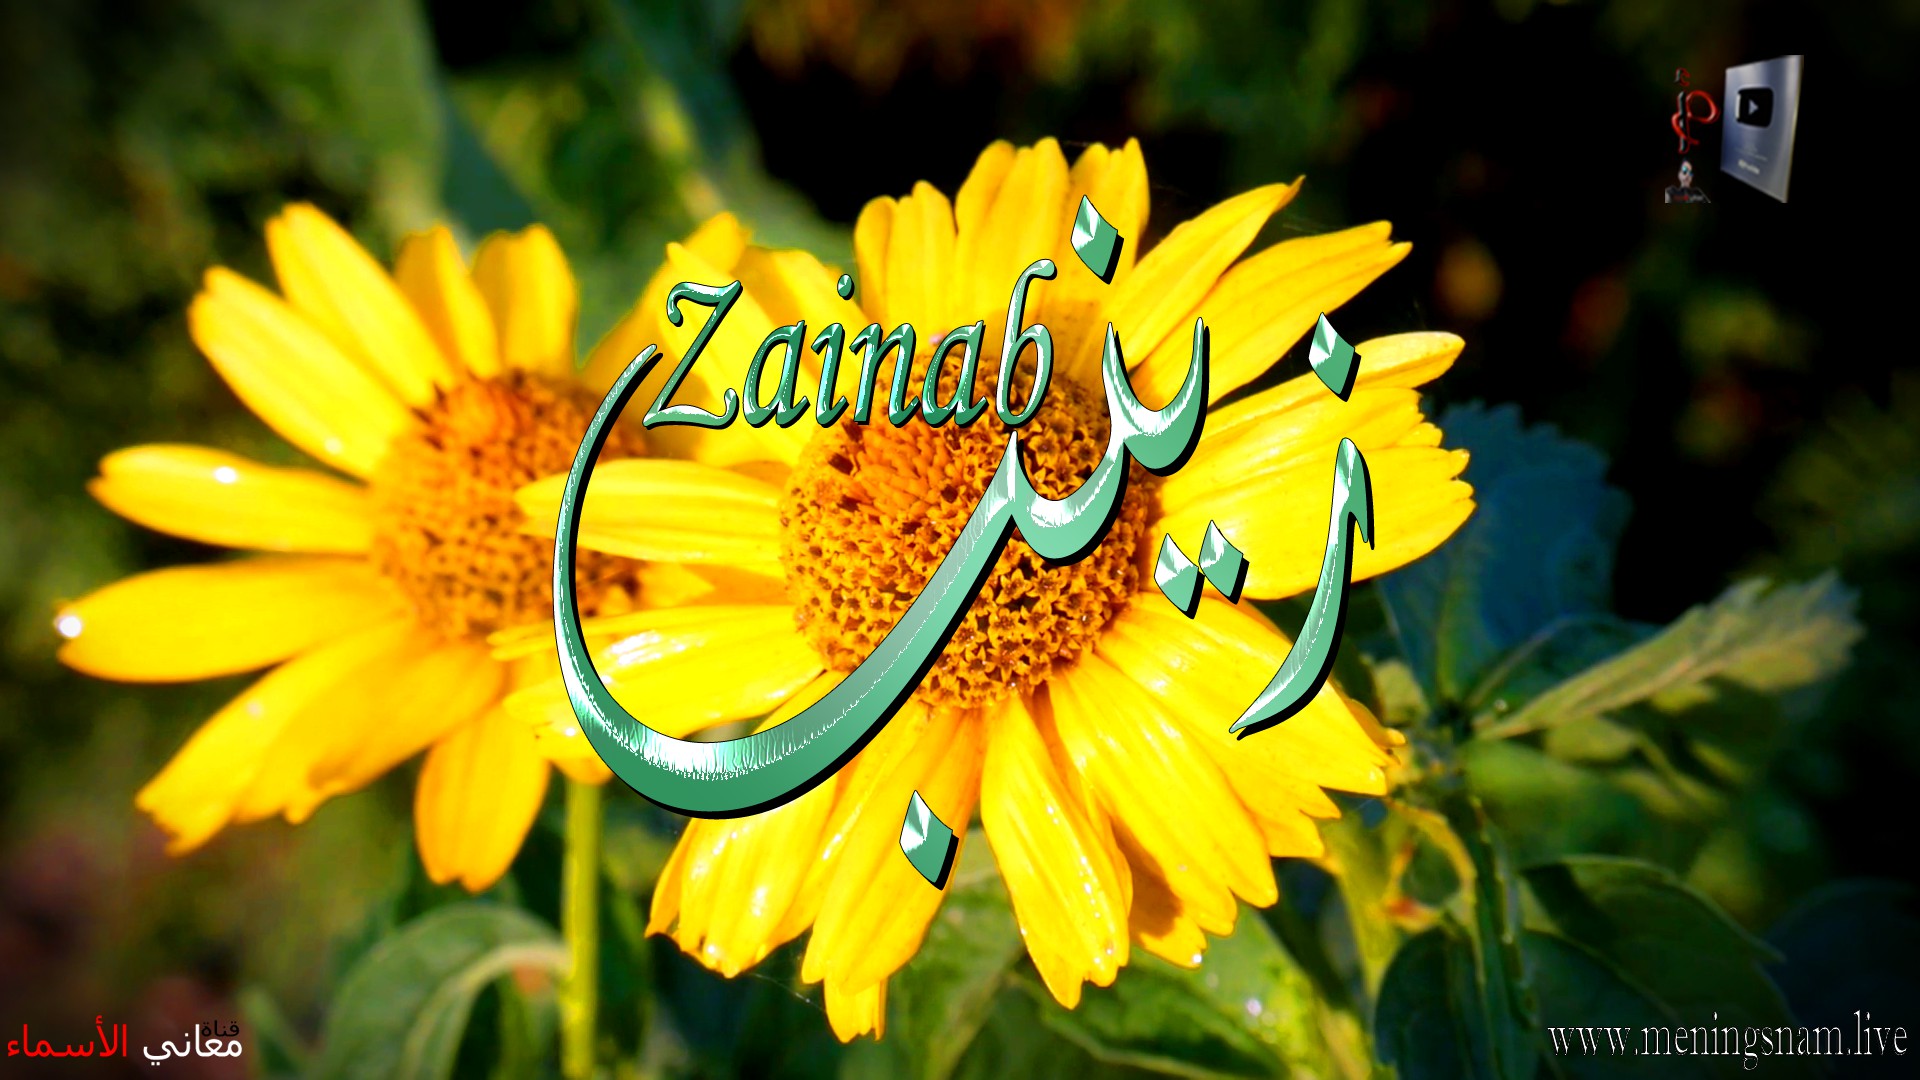 معنى اسم, زينب, وصفات, حاملة, هذا الاسم, Zainab,